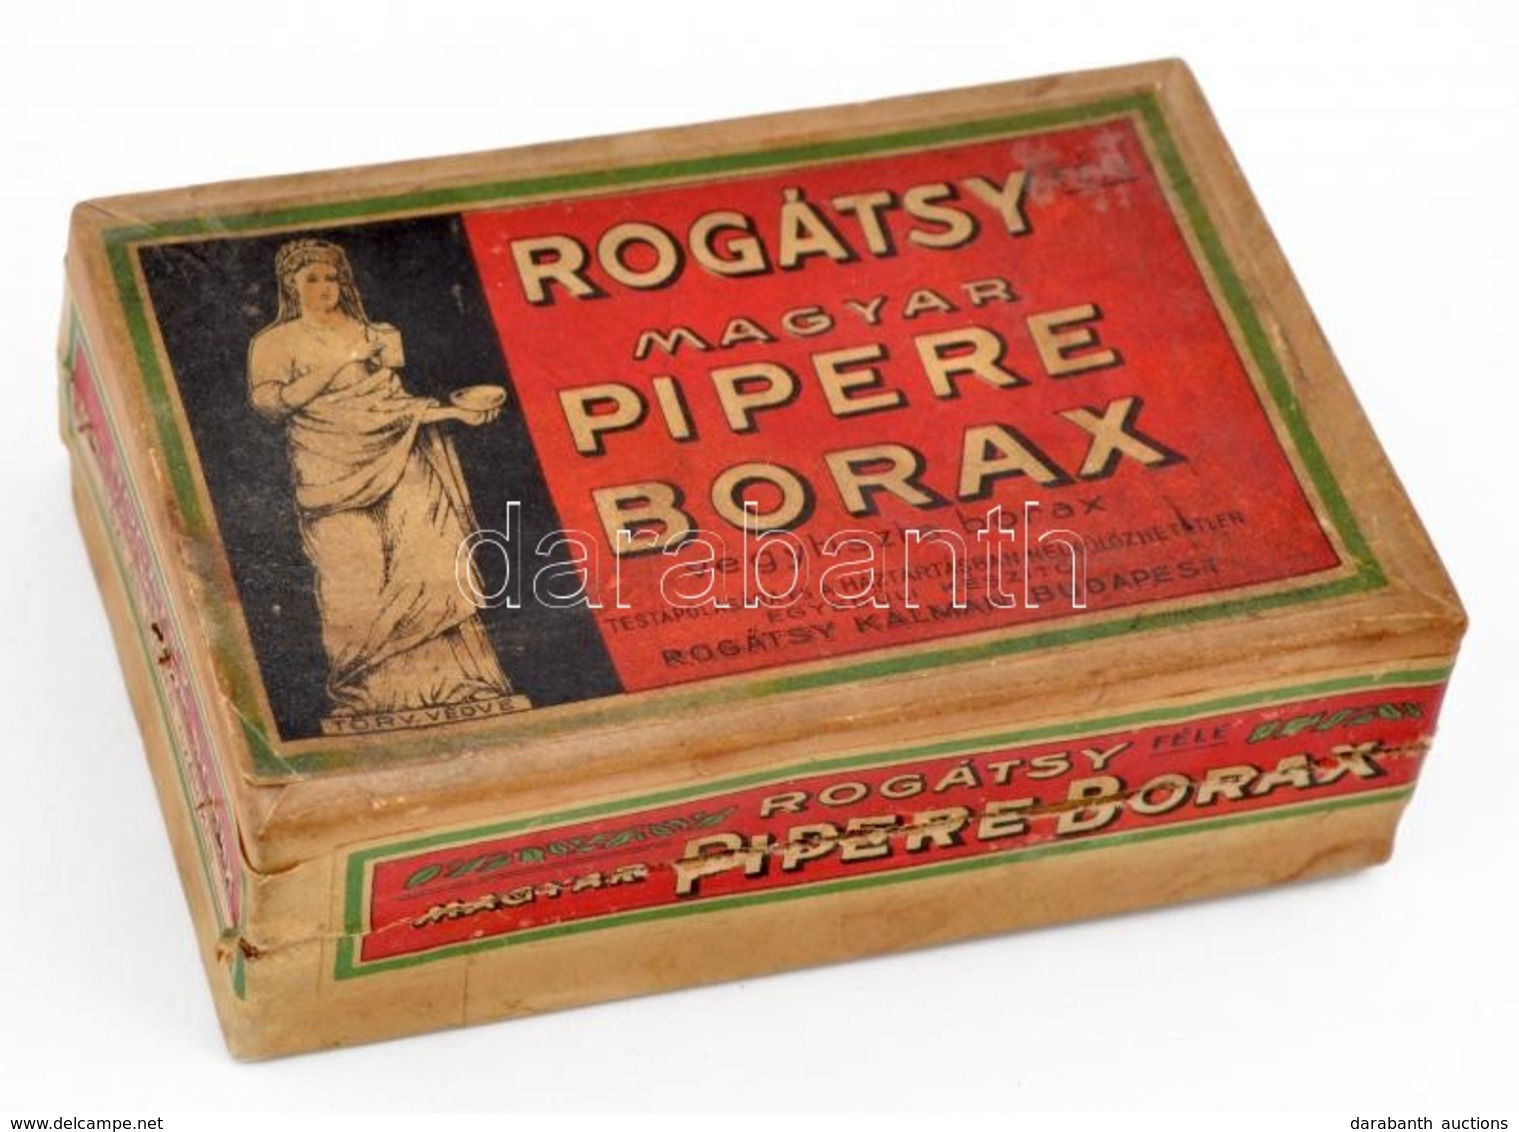 Cca 1930 Rogátsy Pipere Borax Reklámos Papír Doboz 11x7,5 Cm - Advertising